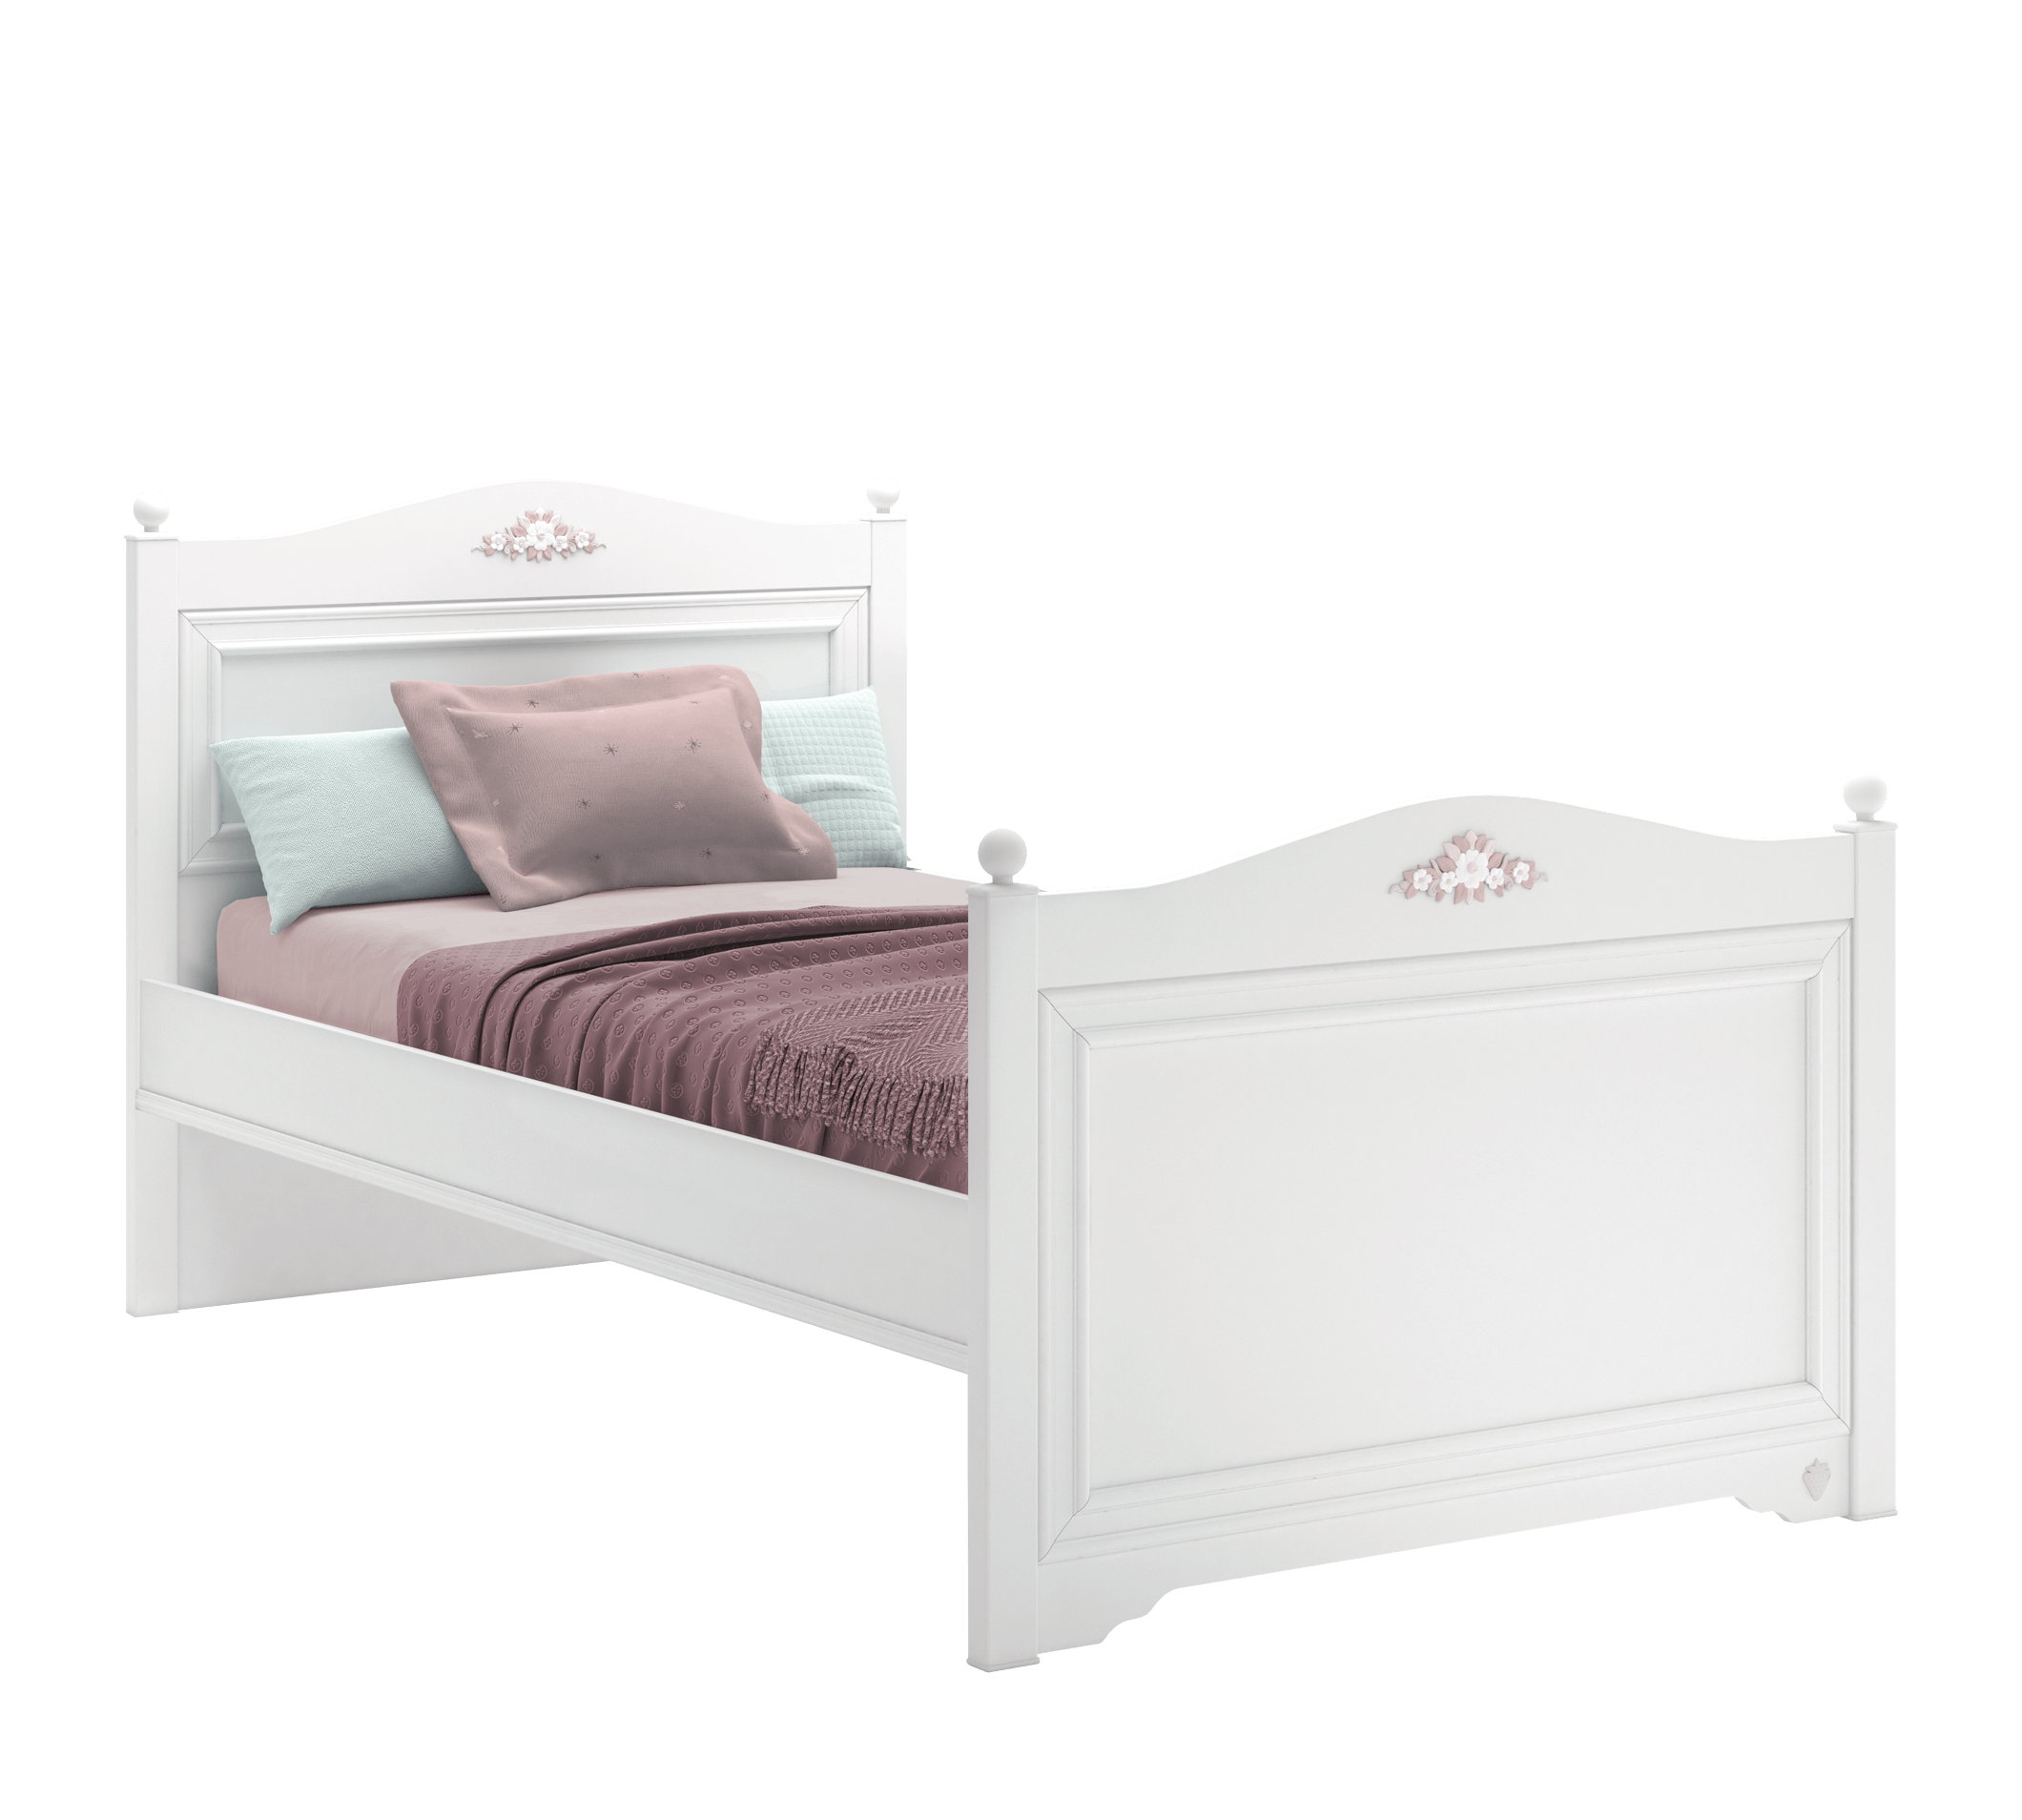 Rustic bed (100x200 cm)